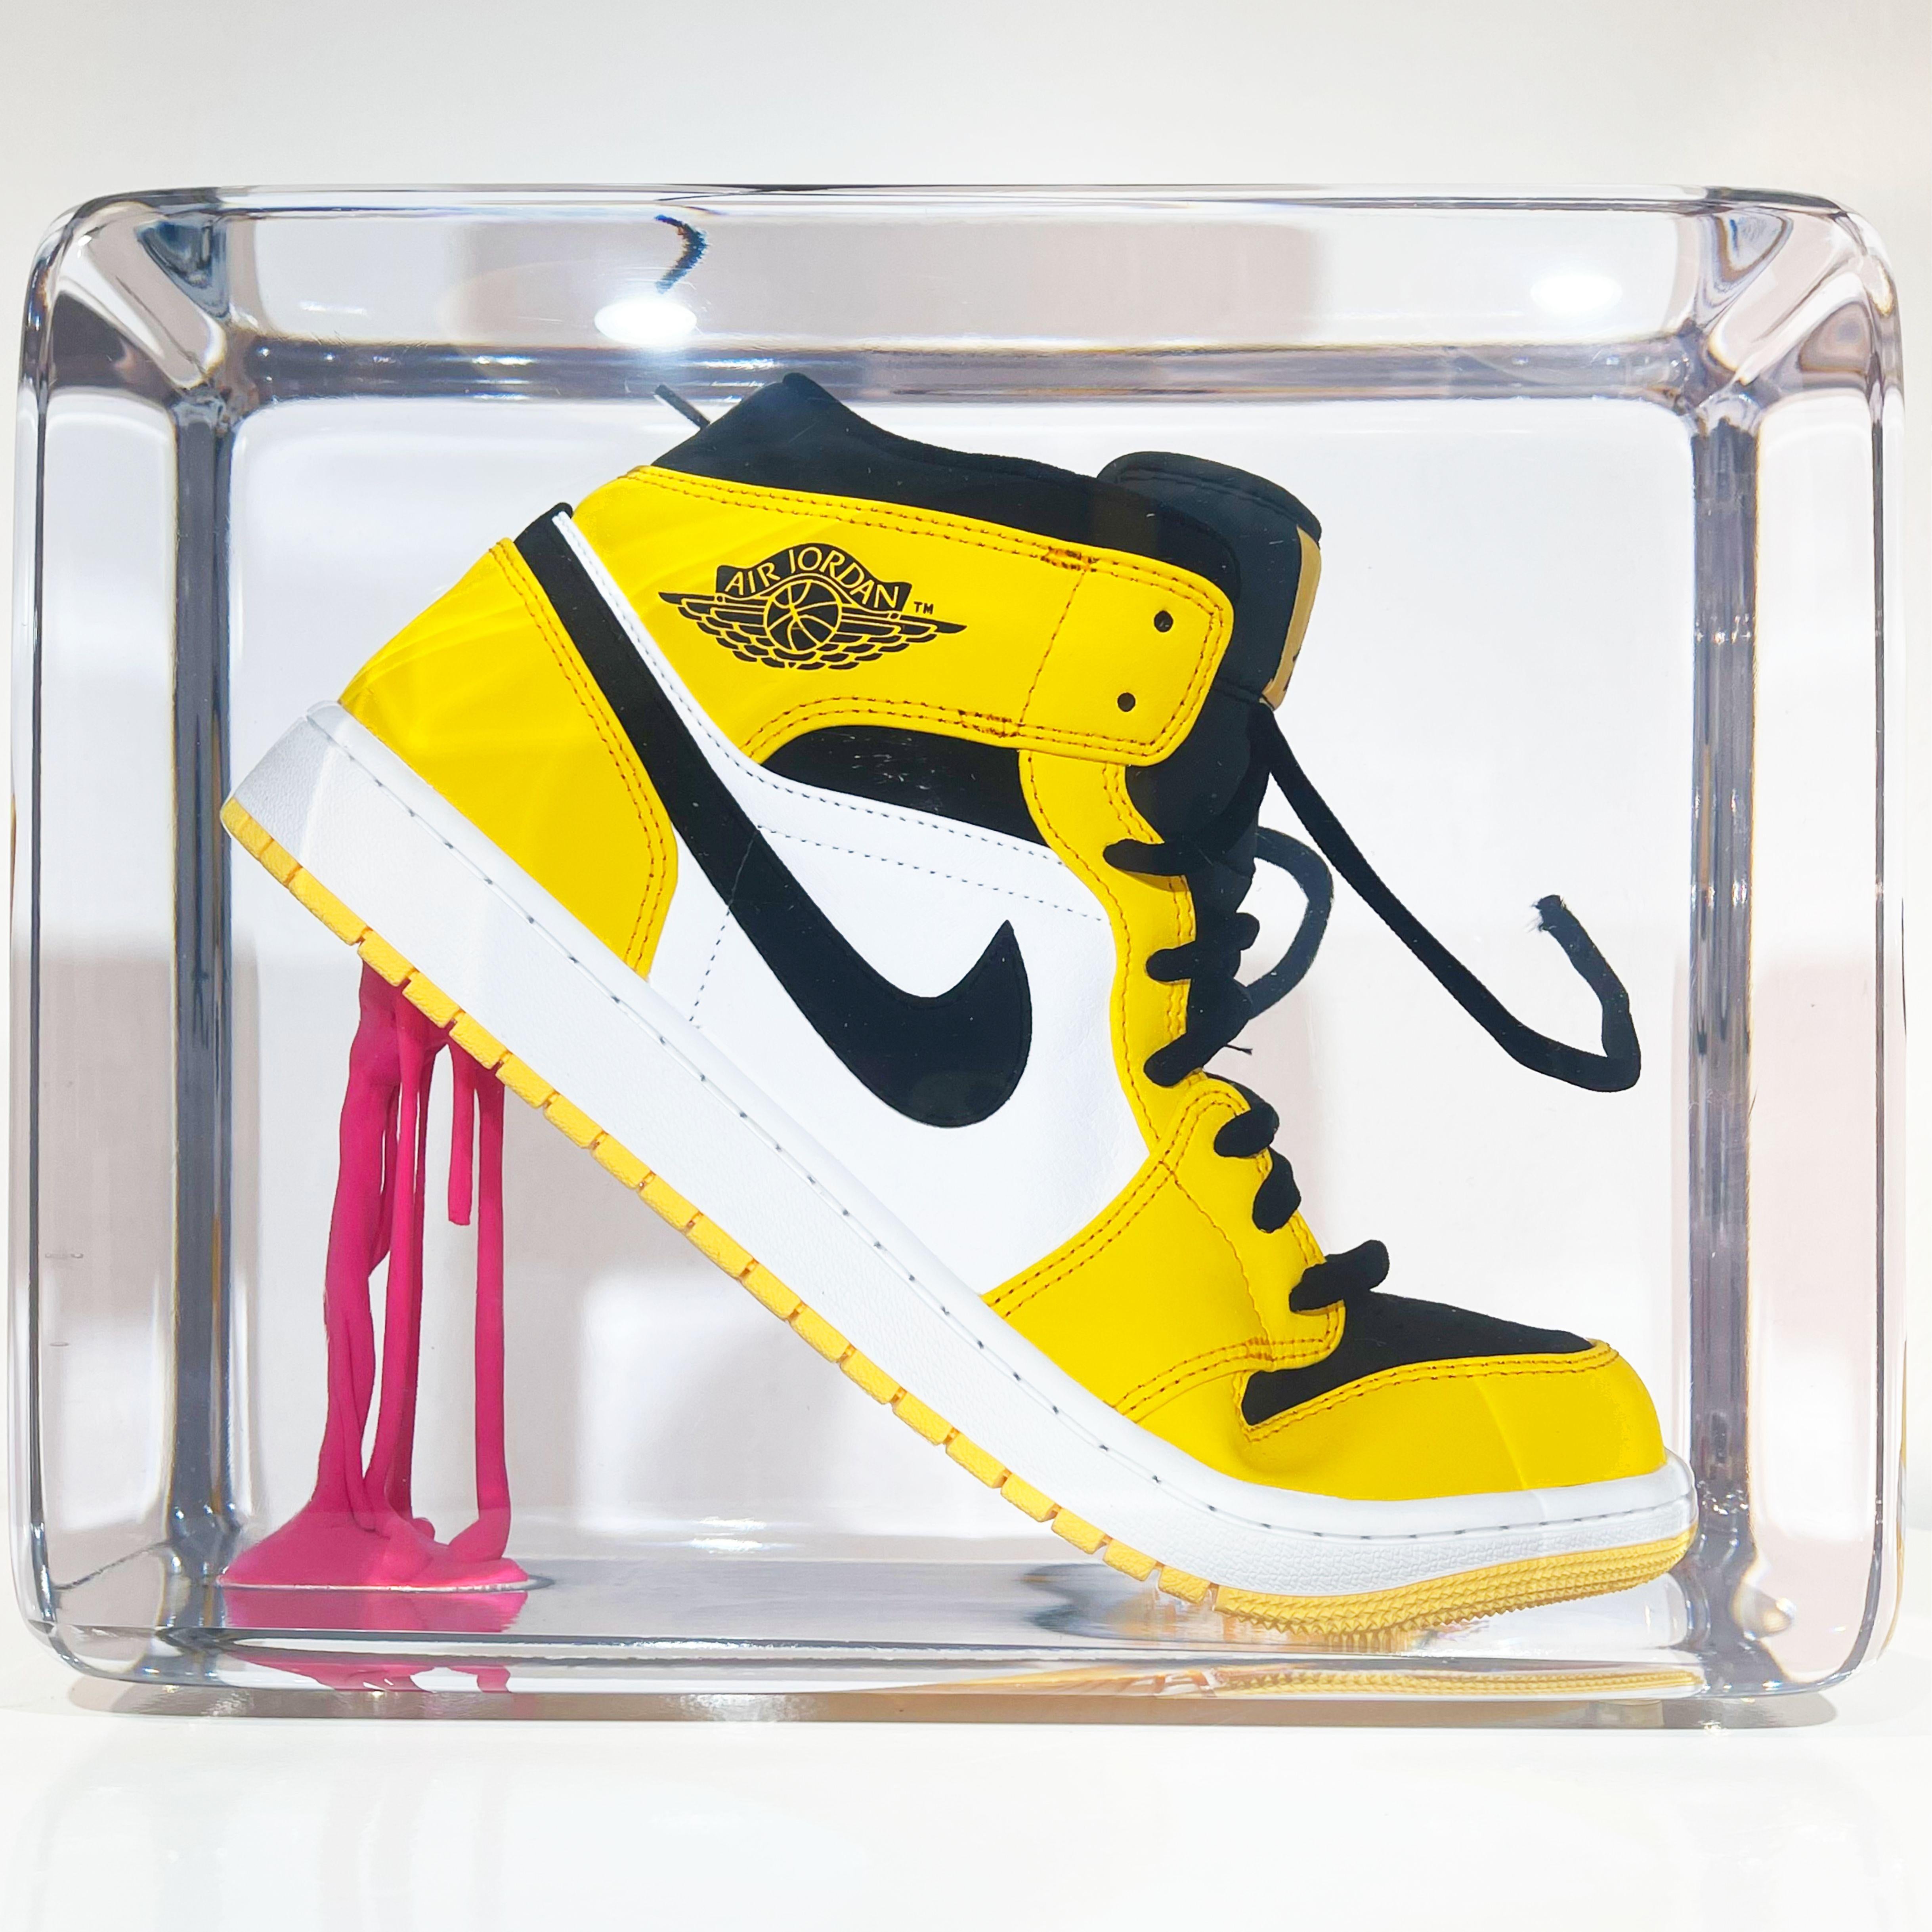 Emmanuel Meneses Still-Life Sculpture - Sneakers & Gum Taxi Yellow tone Sculpture Edition 03/20